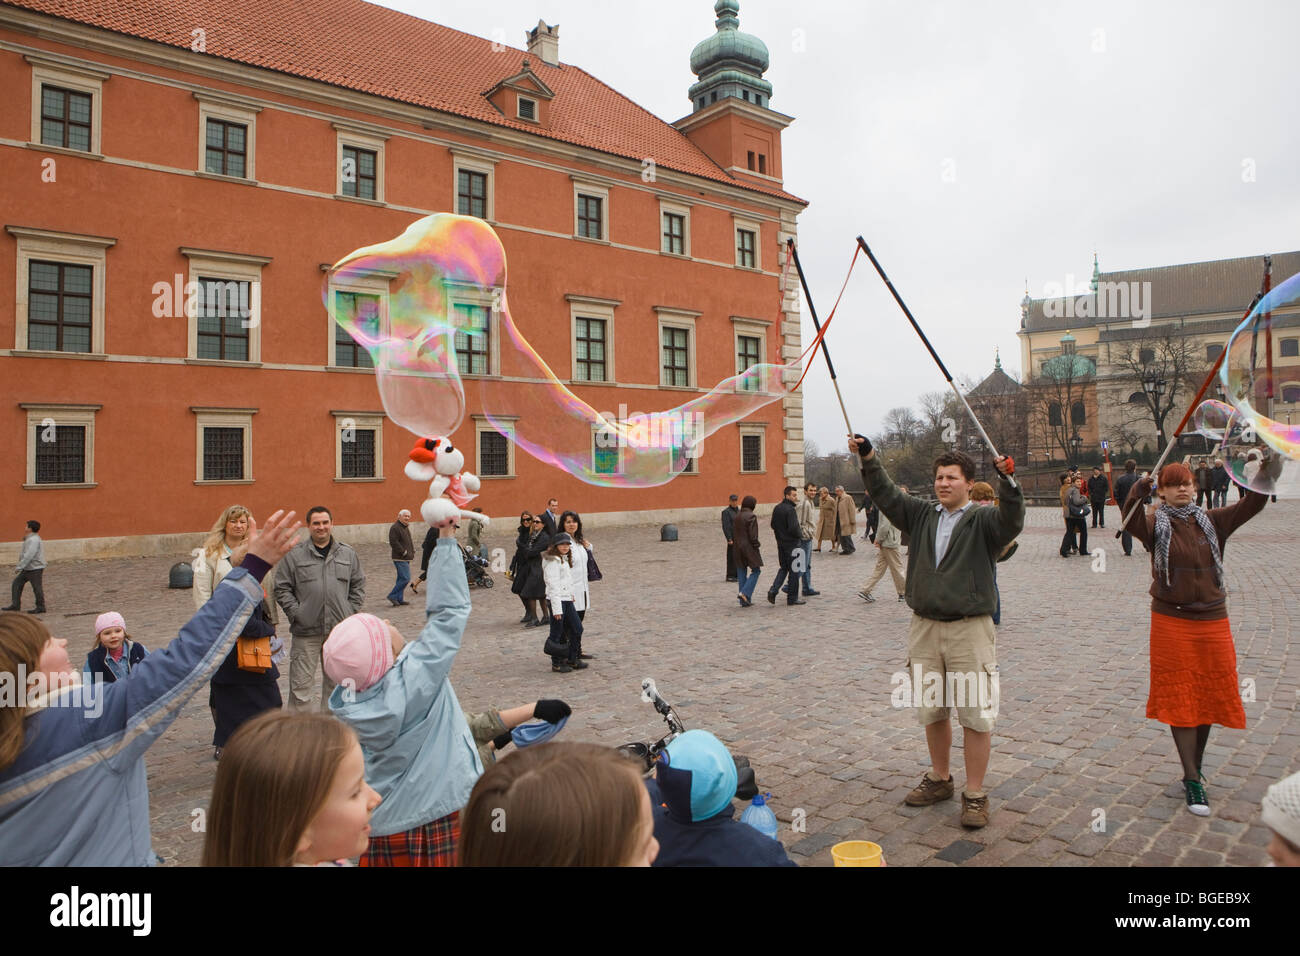 Kinder springen in Richtung einer großen Seifenblase in einen Marktplatz. Warschau, Polen. Stockfoto